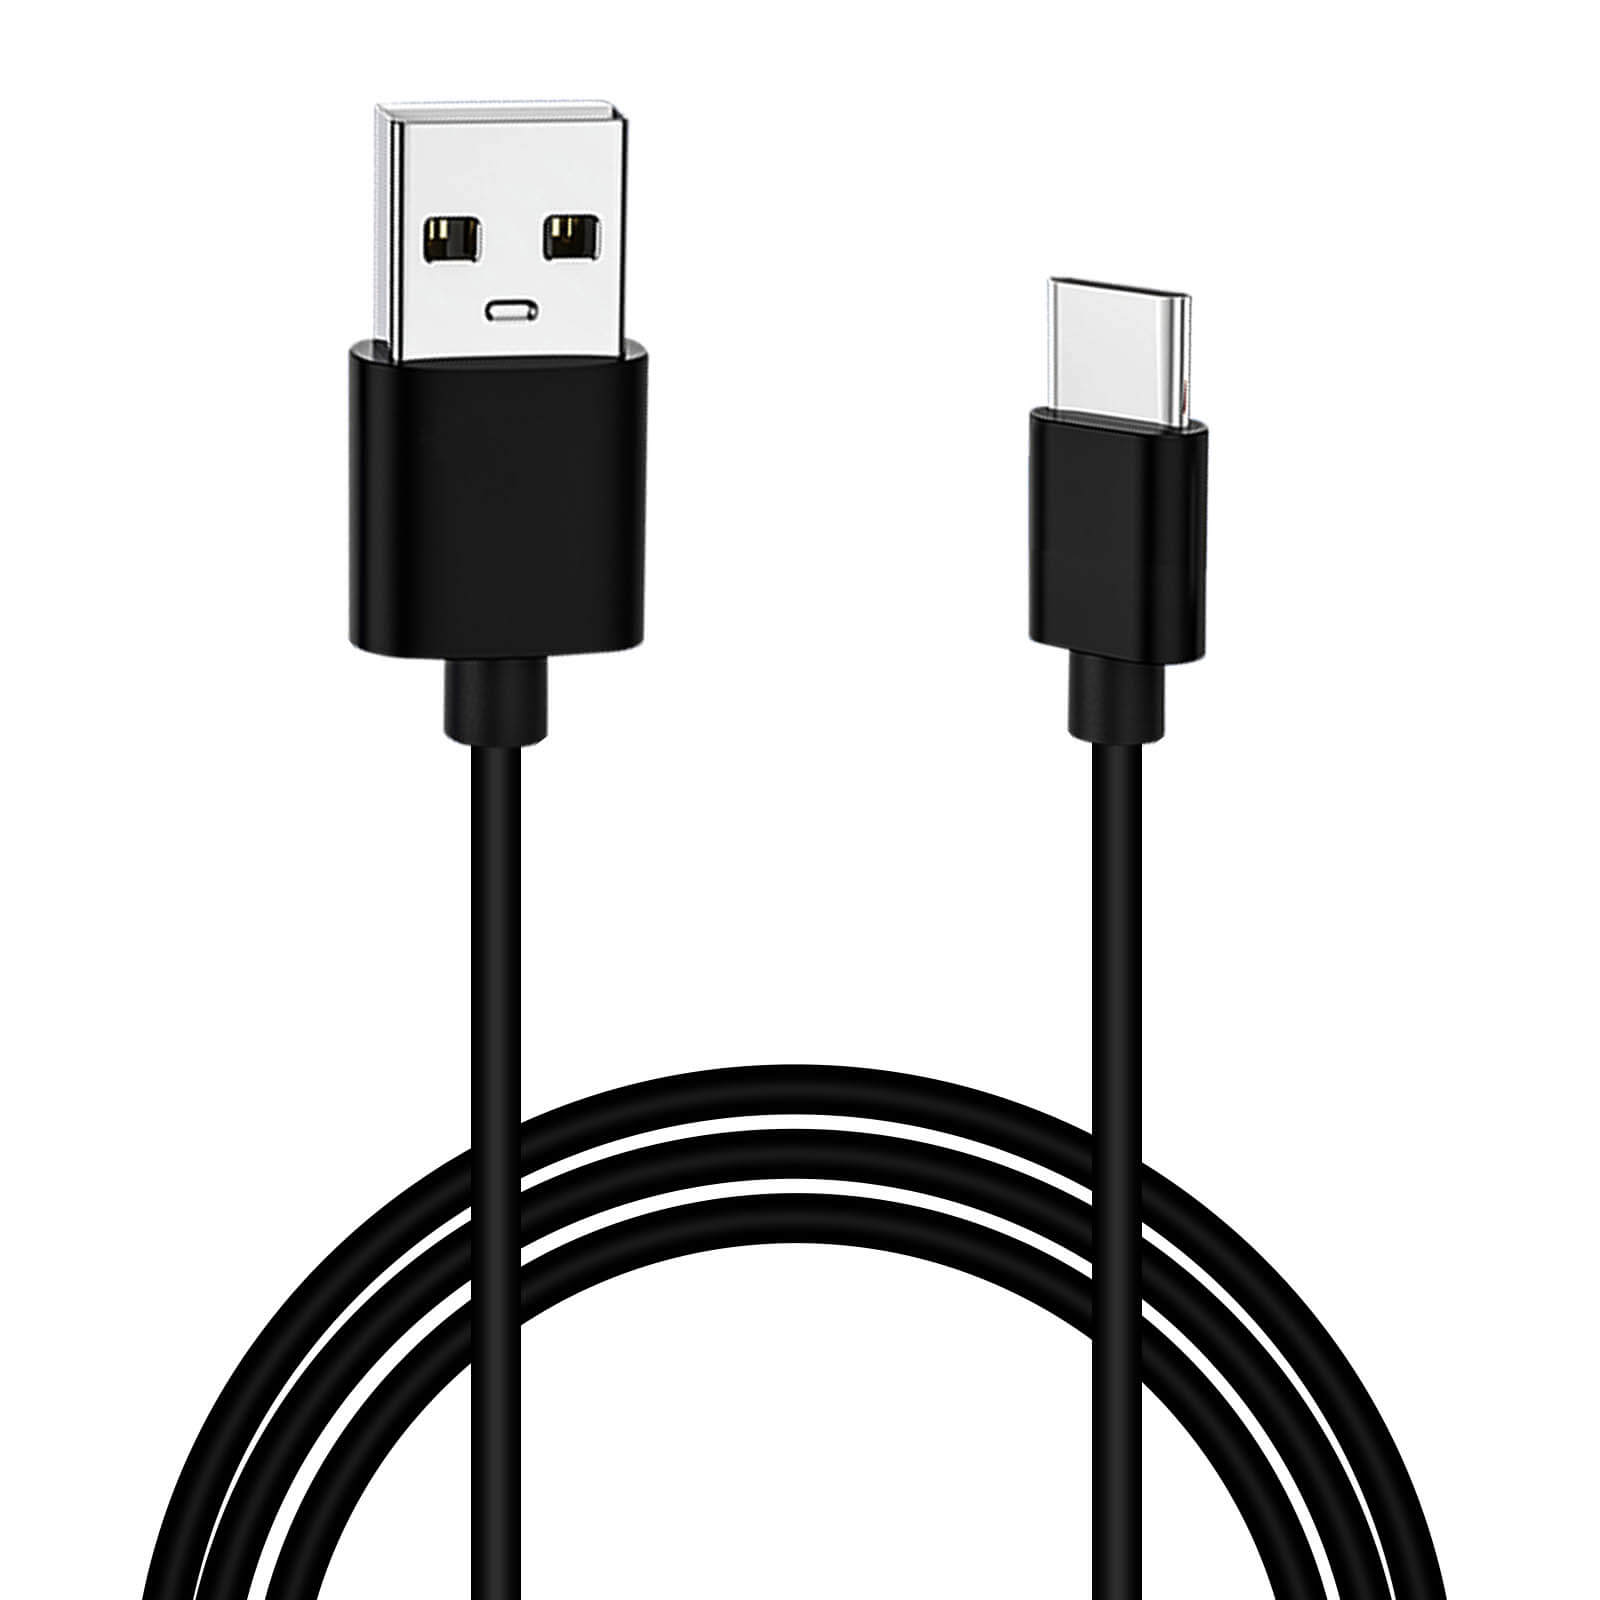 Câble Charge et Synchronisation Original Xiaomi avec embout USB Type-C 1m -  Noir - Français